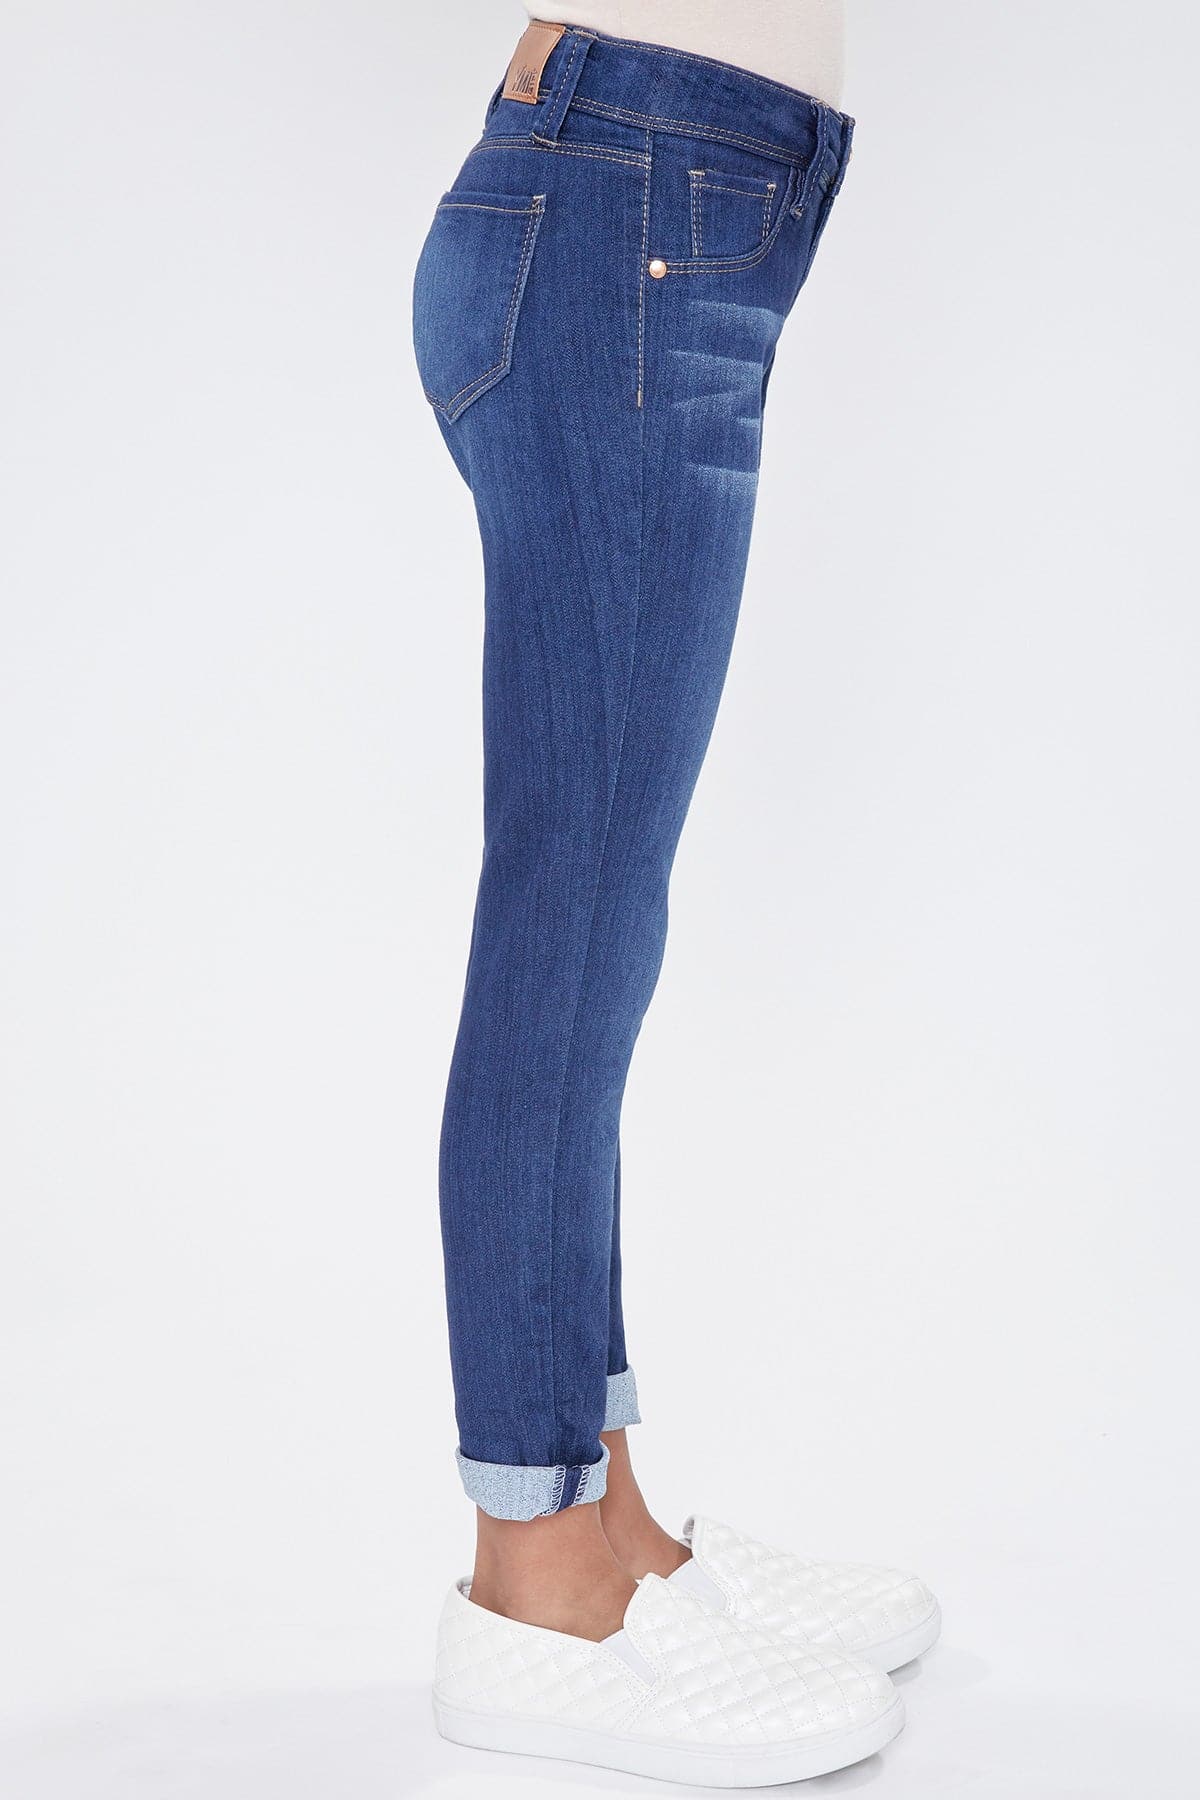 Cuff YMI Optional from JEANS Skinny Jeans Girls – YMI Denim